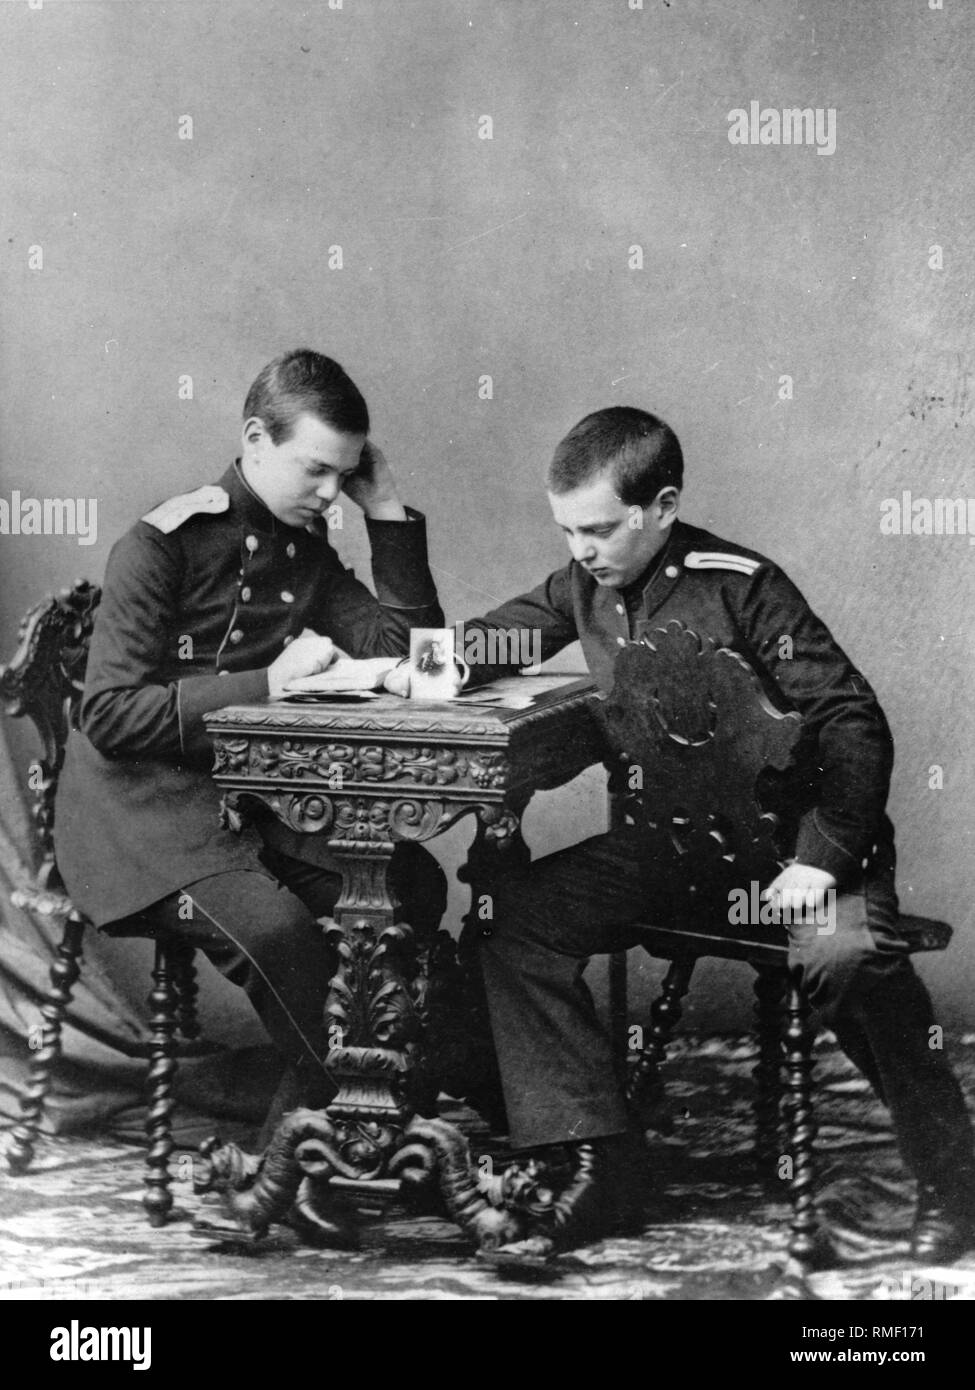 Gran Duque Alexander Alexandrovitch de Rusia (1845-1894) con el hermano de Vladimir Alexandrovich de Rusia (1847-1909). La albúmina foto Foto de stock